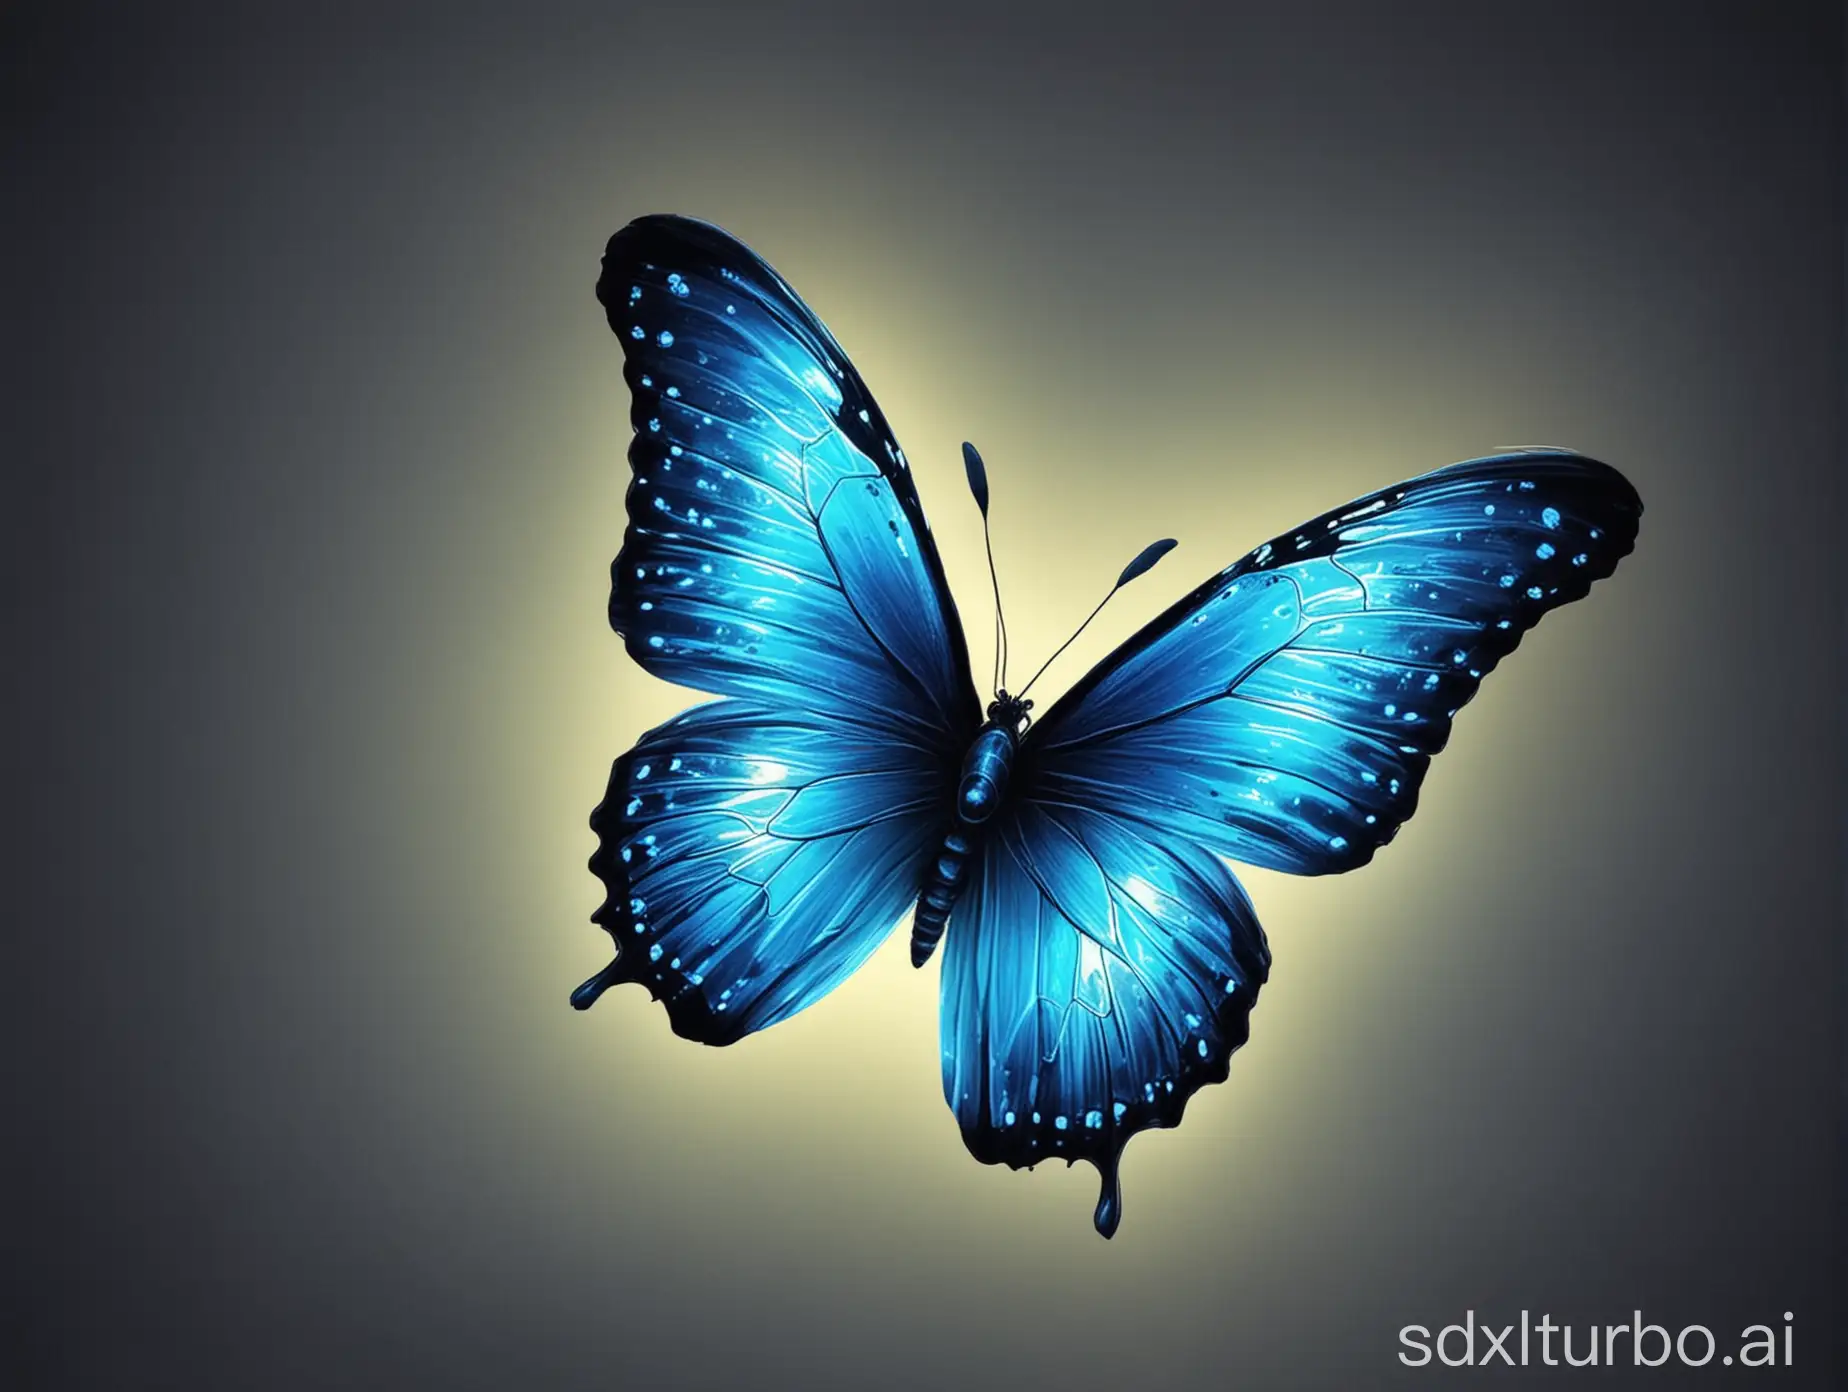 Vibrant-Blue-Neon-Butterfly-in-Flight